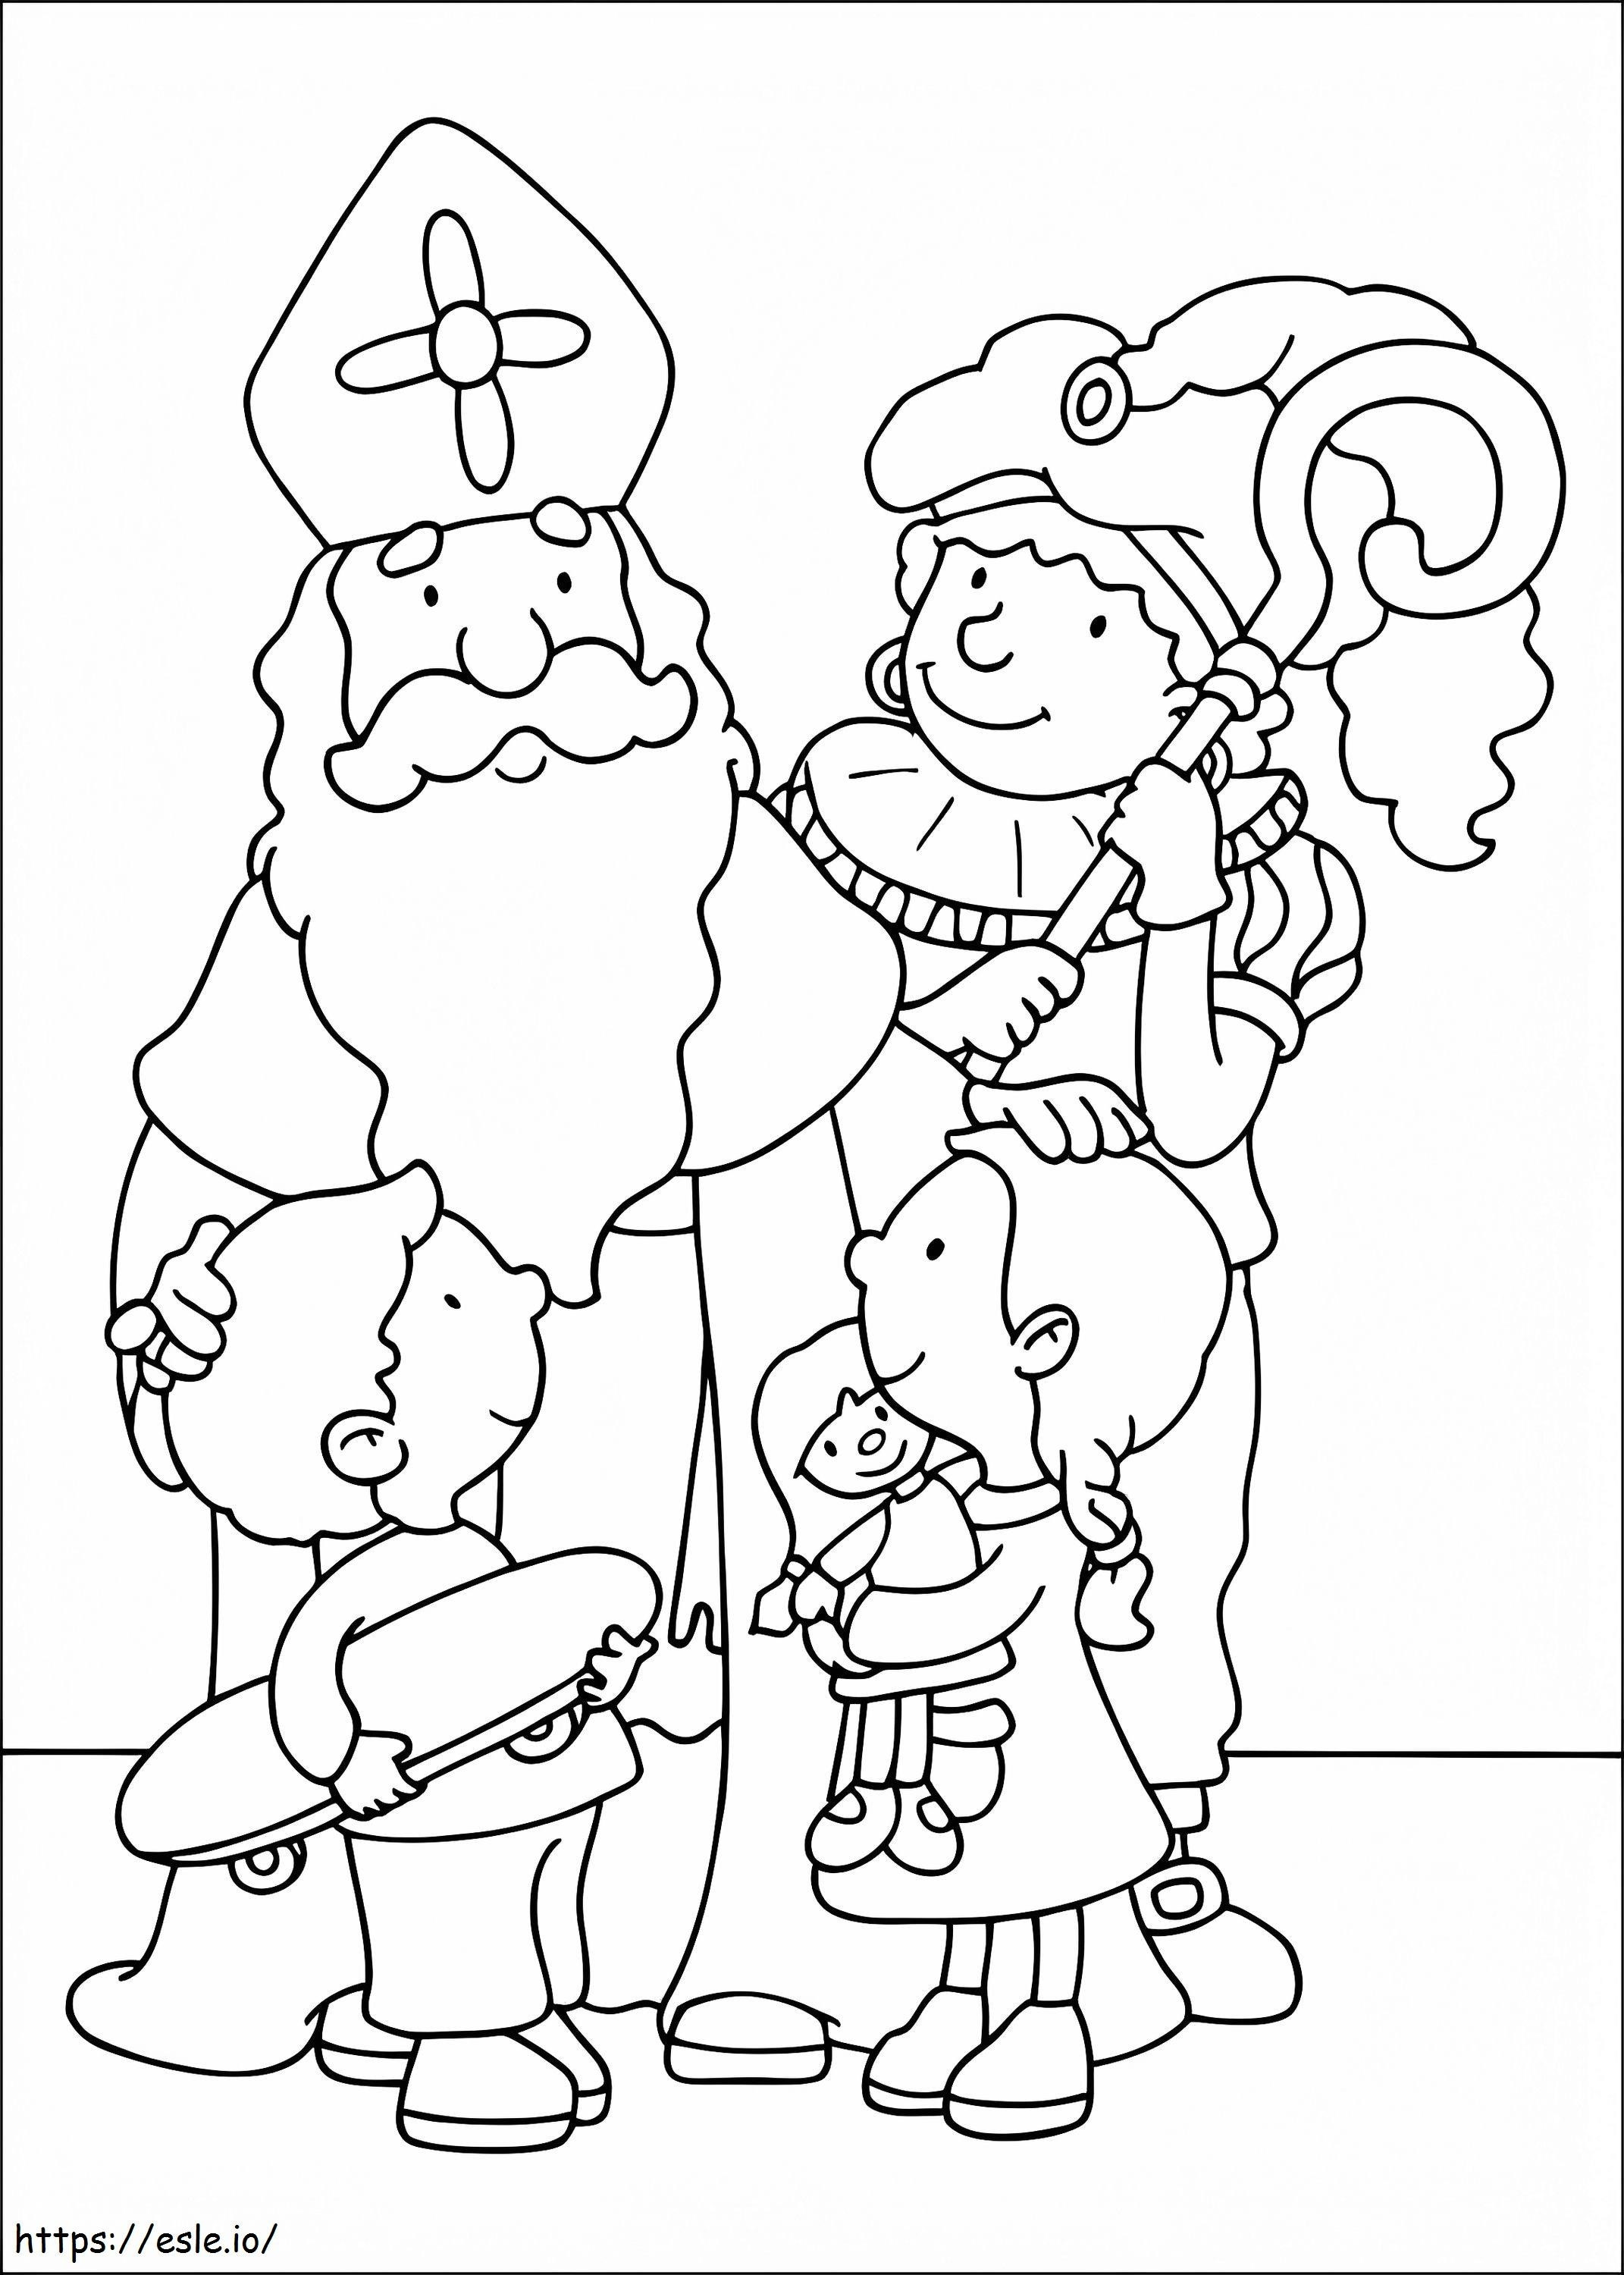 Bambini e San Nicola da colorare